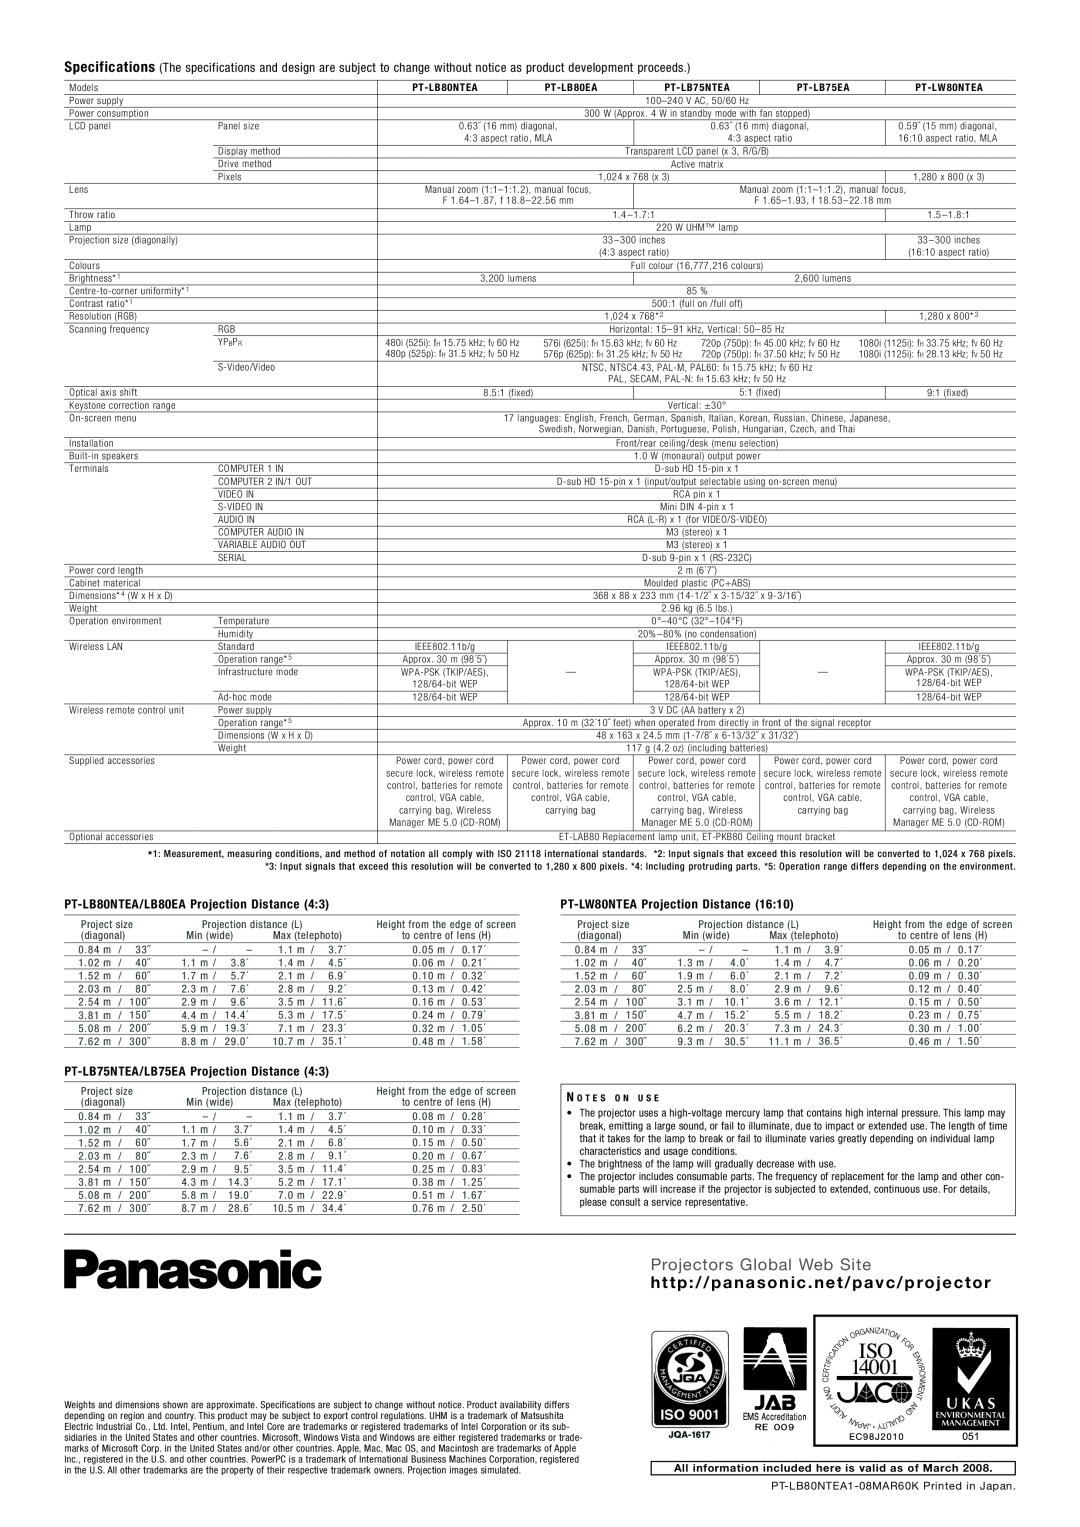 Panasonic PT-LB80NTEA manual Projectors Global Web Site, h t t p / / p a n a s o n i c . n e t / p a v c / p ro j e c t o r 